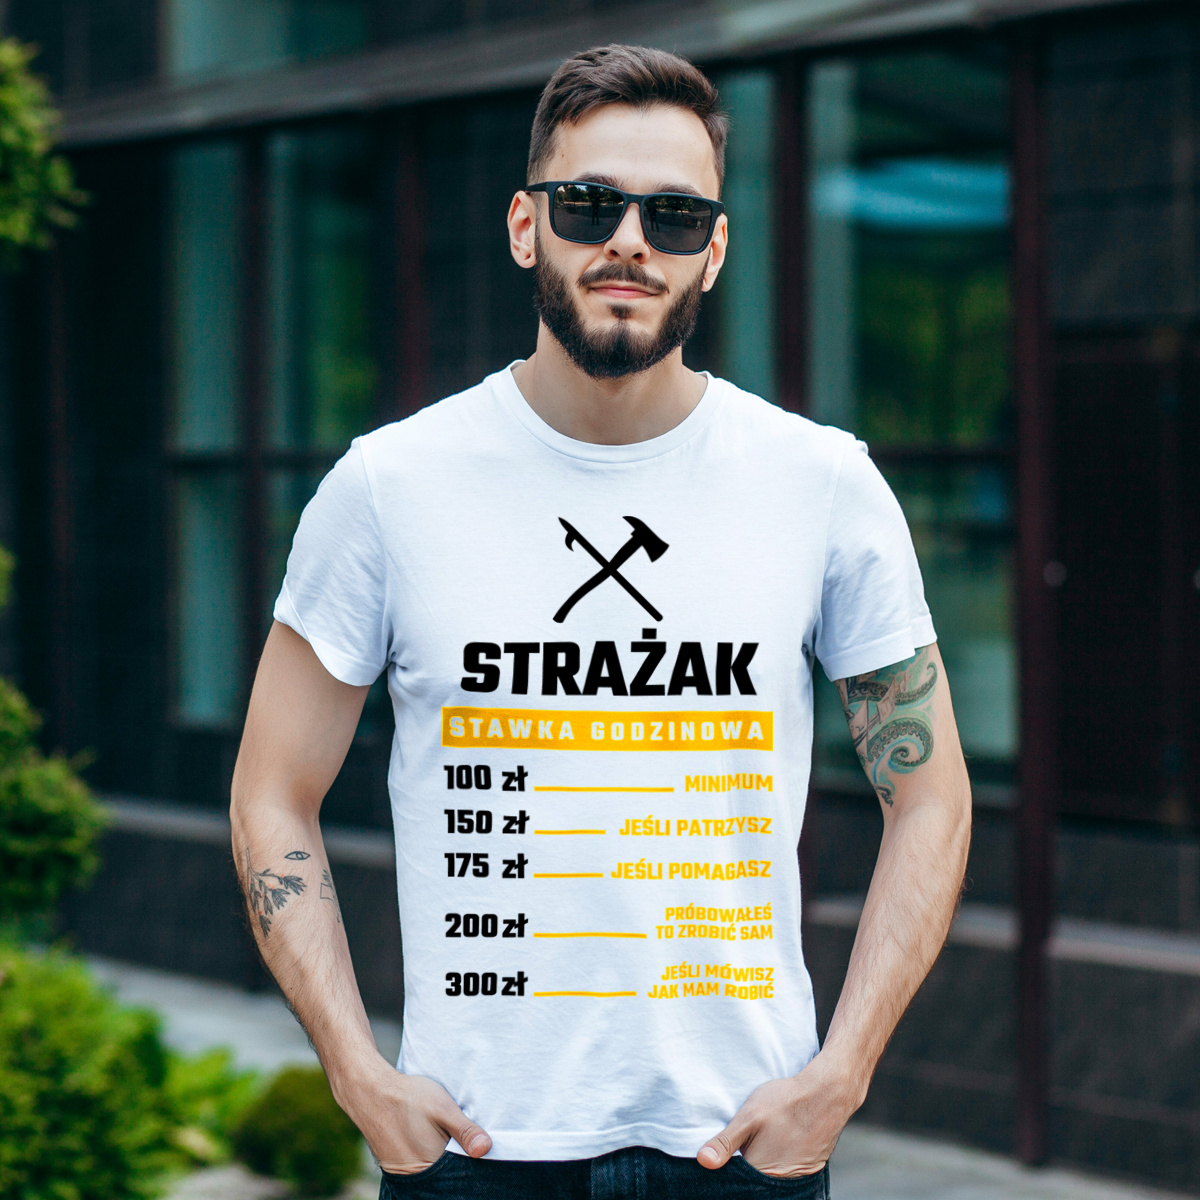 Stawka Godzinowa Strażak - Męska Koszulka Biała